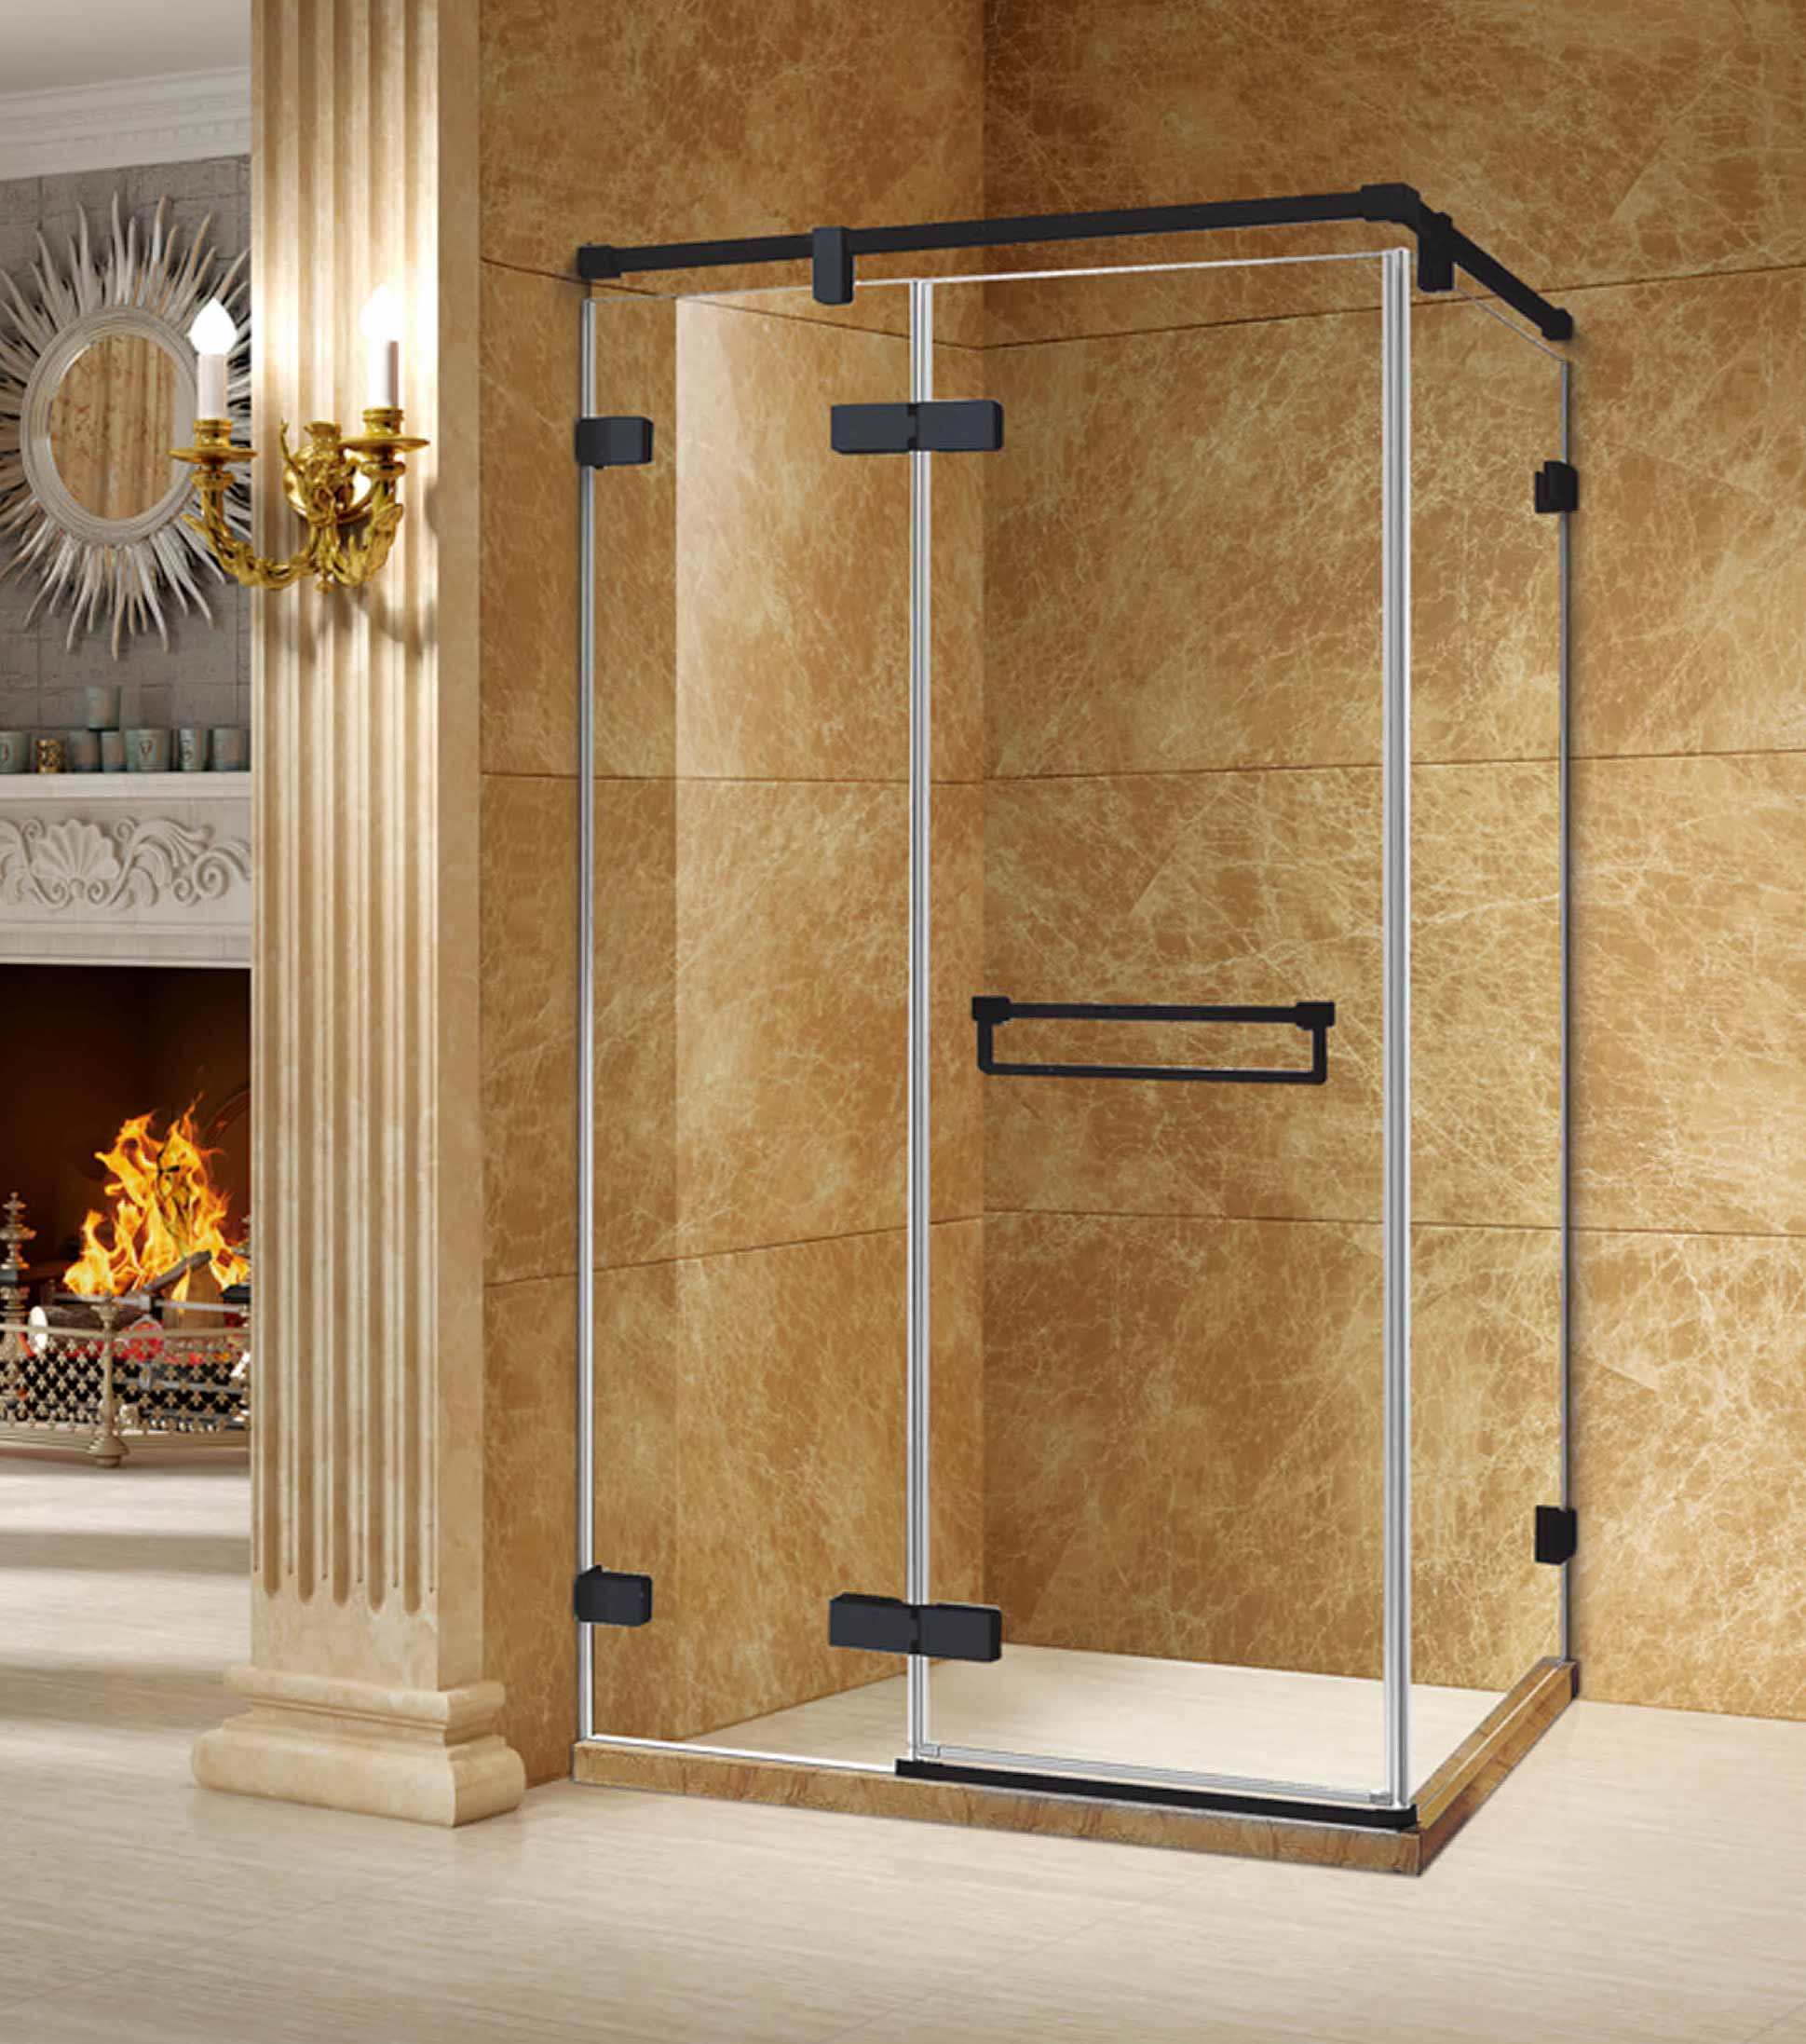 11平米卫生间古典风格淋浴房隔断装修效果图